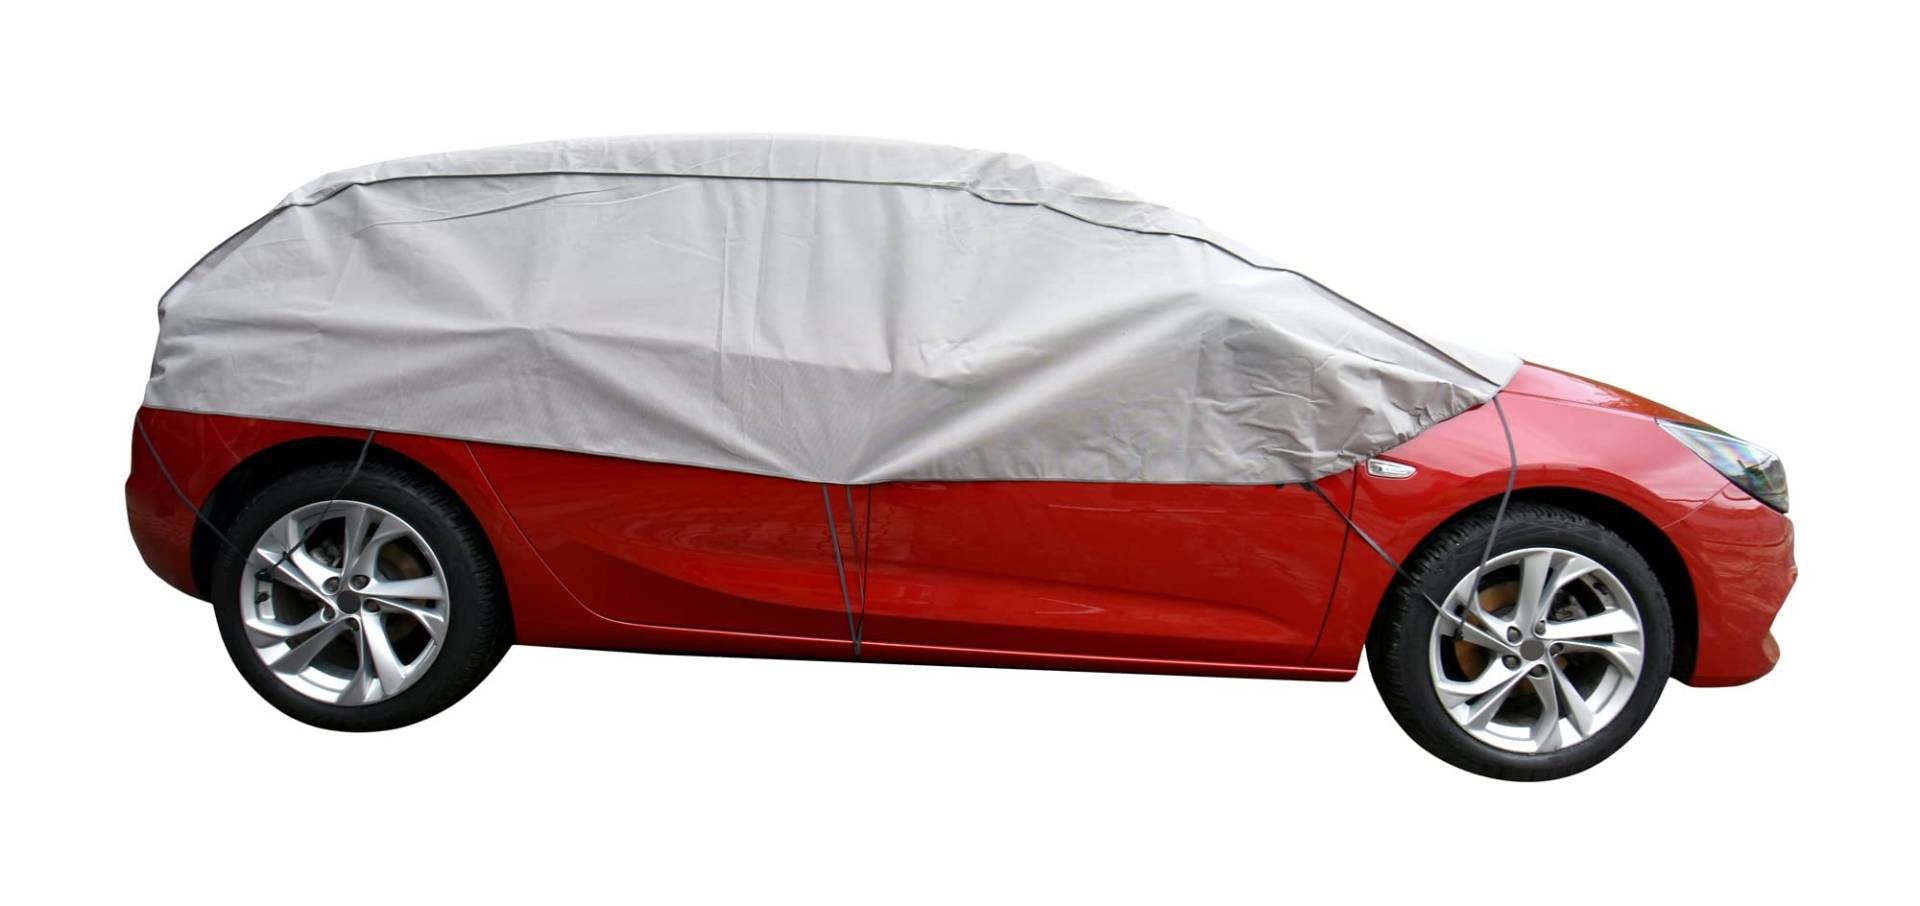 Scheibenschutz Halbgarage für Winter Sommer Herbst kompatibel mit Hyundai Kona - Autoabdeckung Kleinwagen grau Aussen und Ihnnen Bereich von Z4L